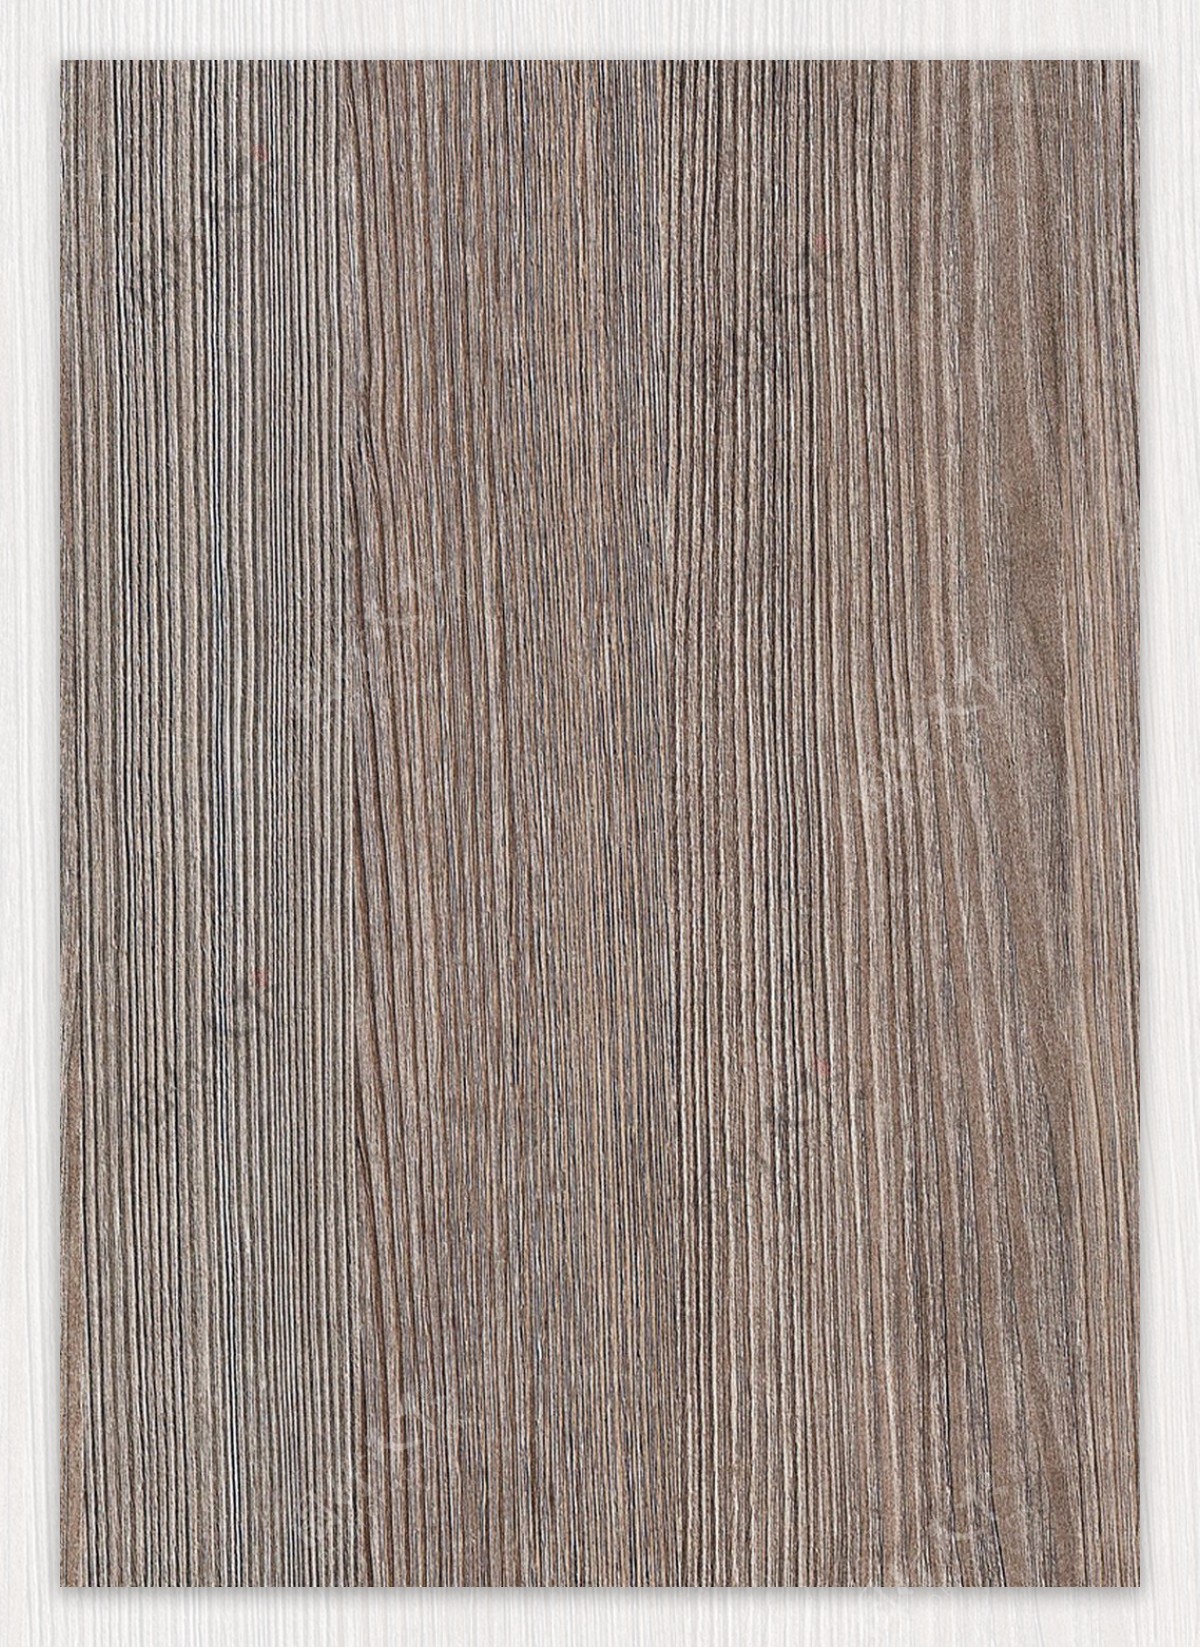 实木木纹材质贴图素材